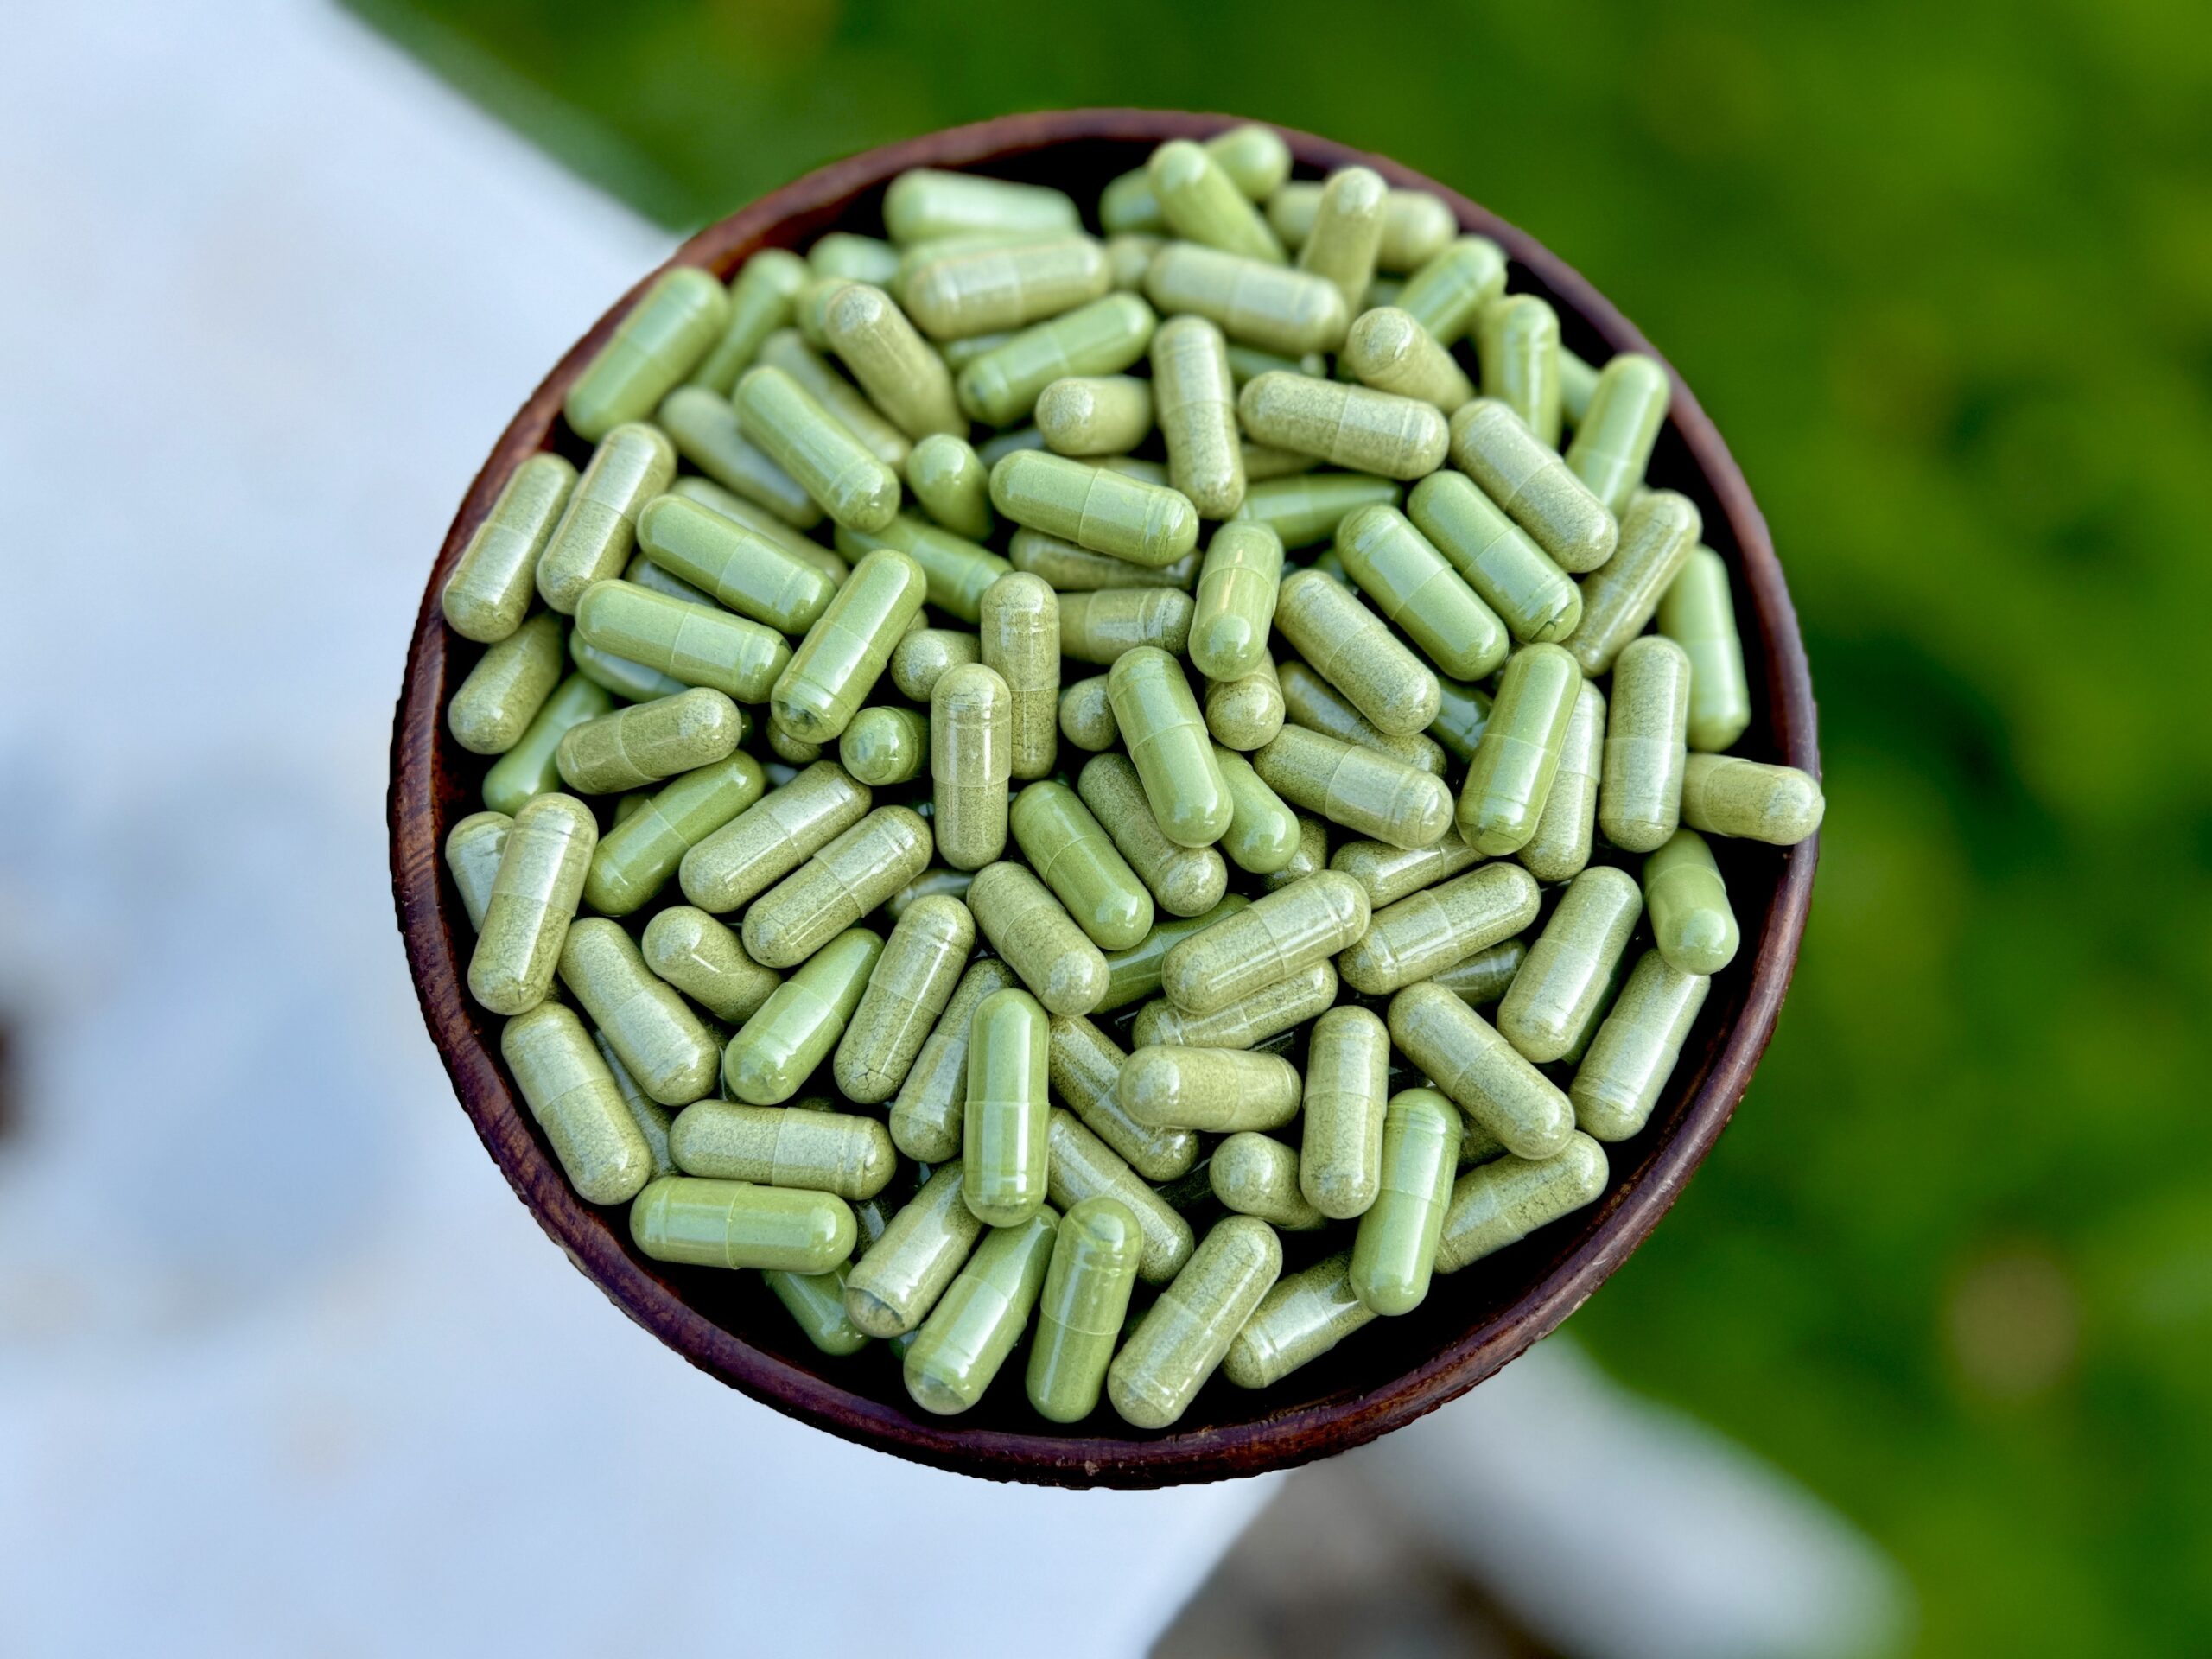 Moringa capsules in a bowl